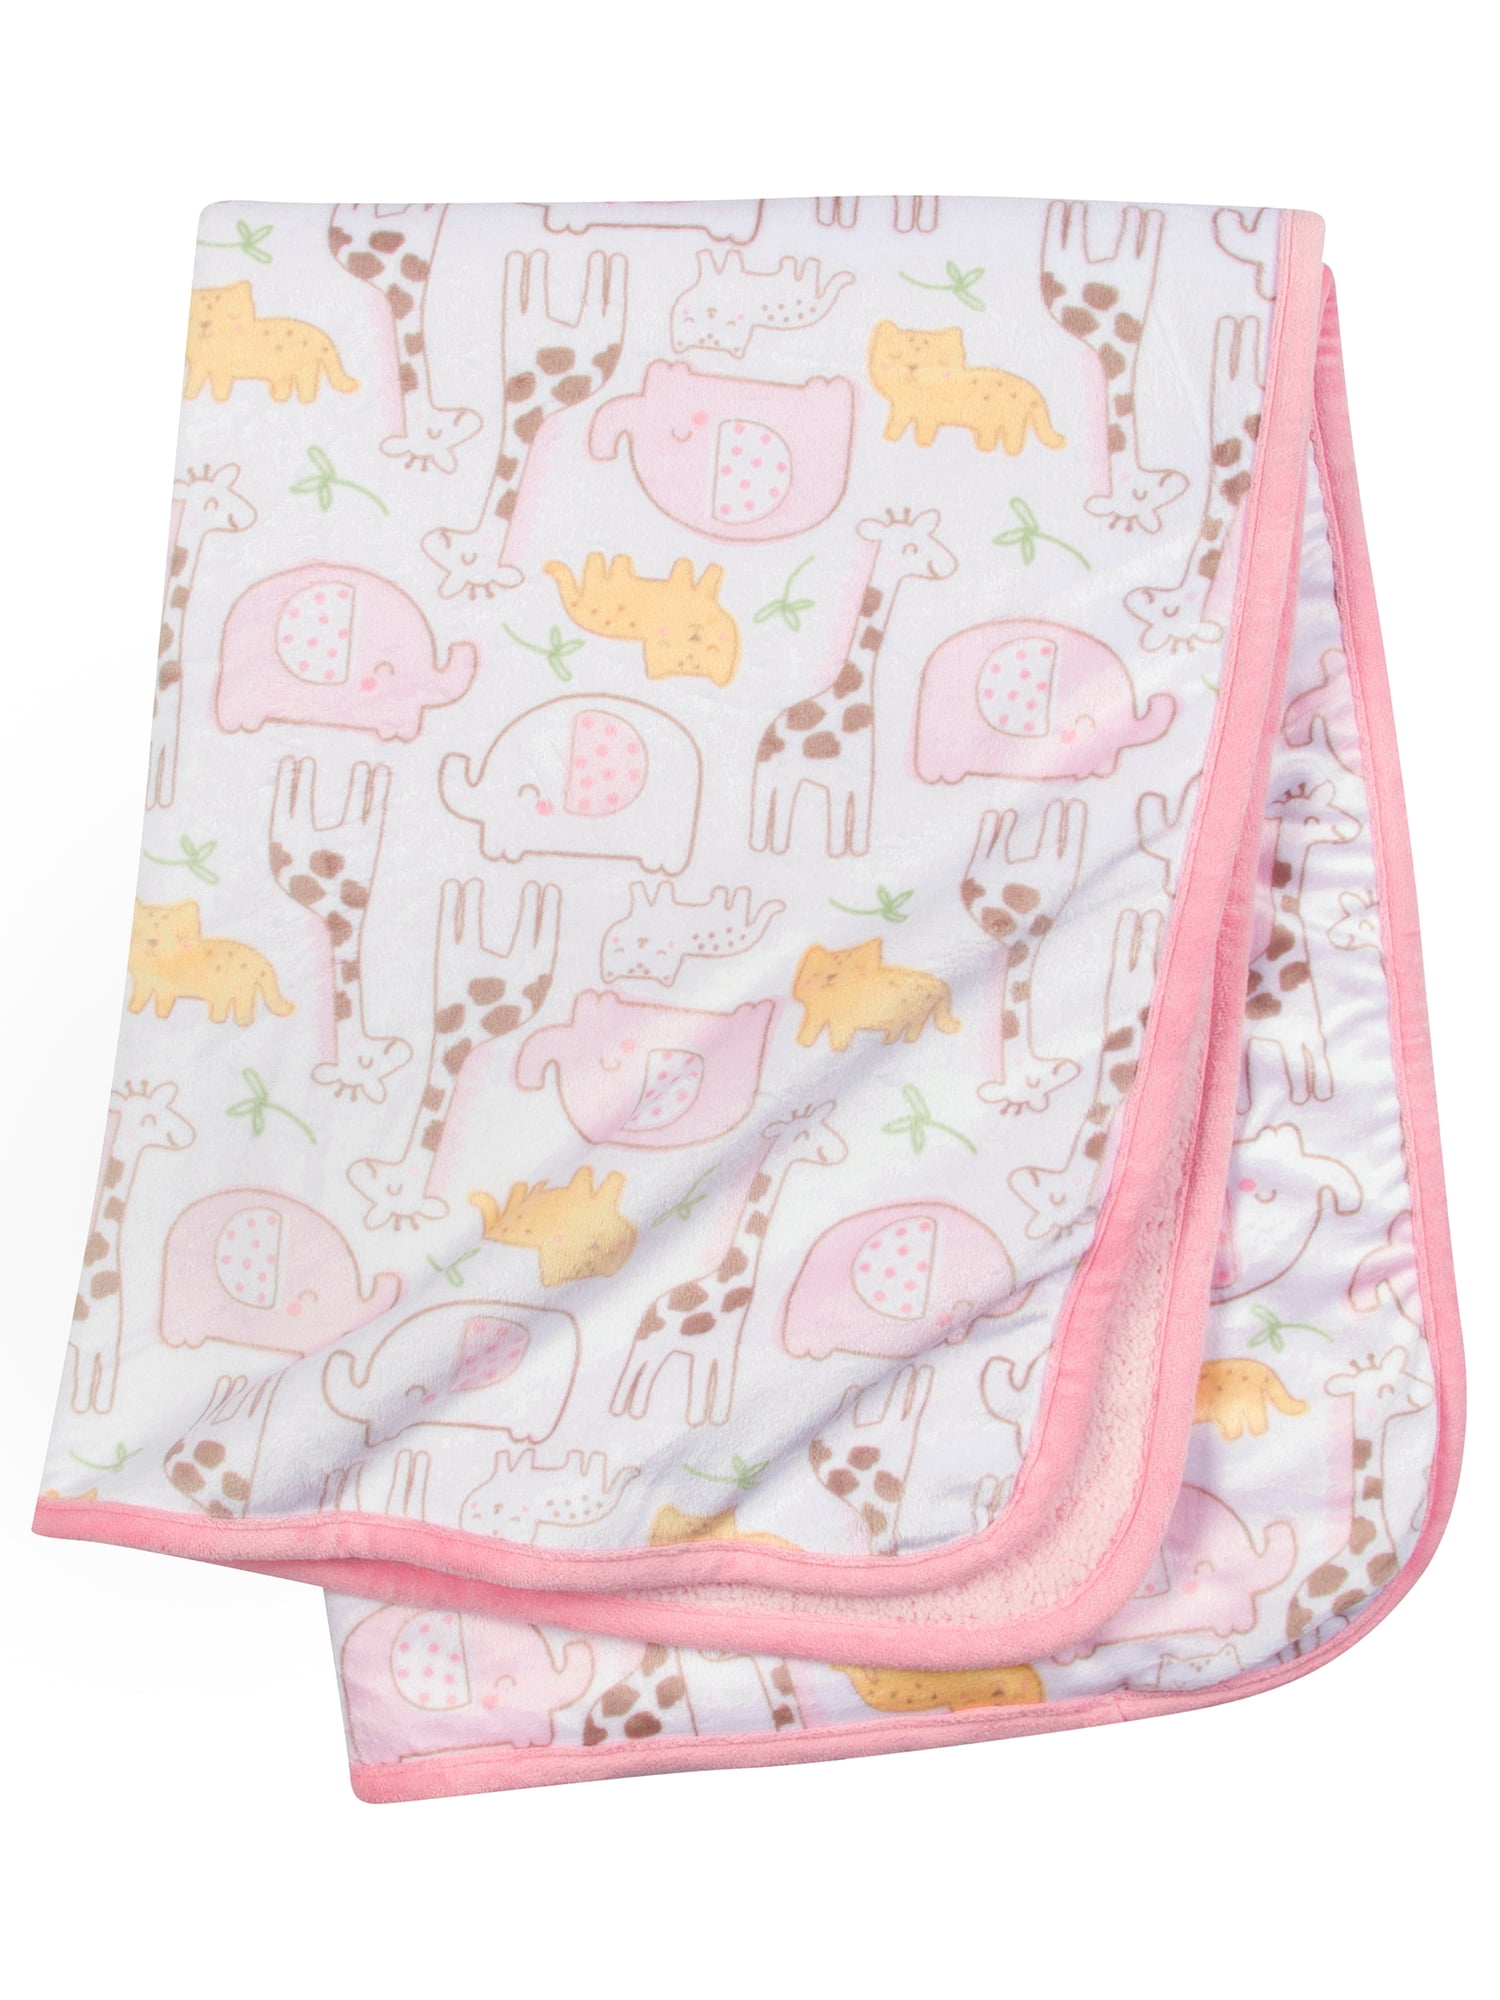 New NWT Chick Pea Girl 2 Pack White Pink Giraffe Zebra Muslin Swaddle Blanket 